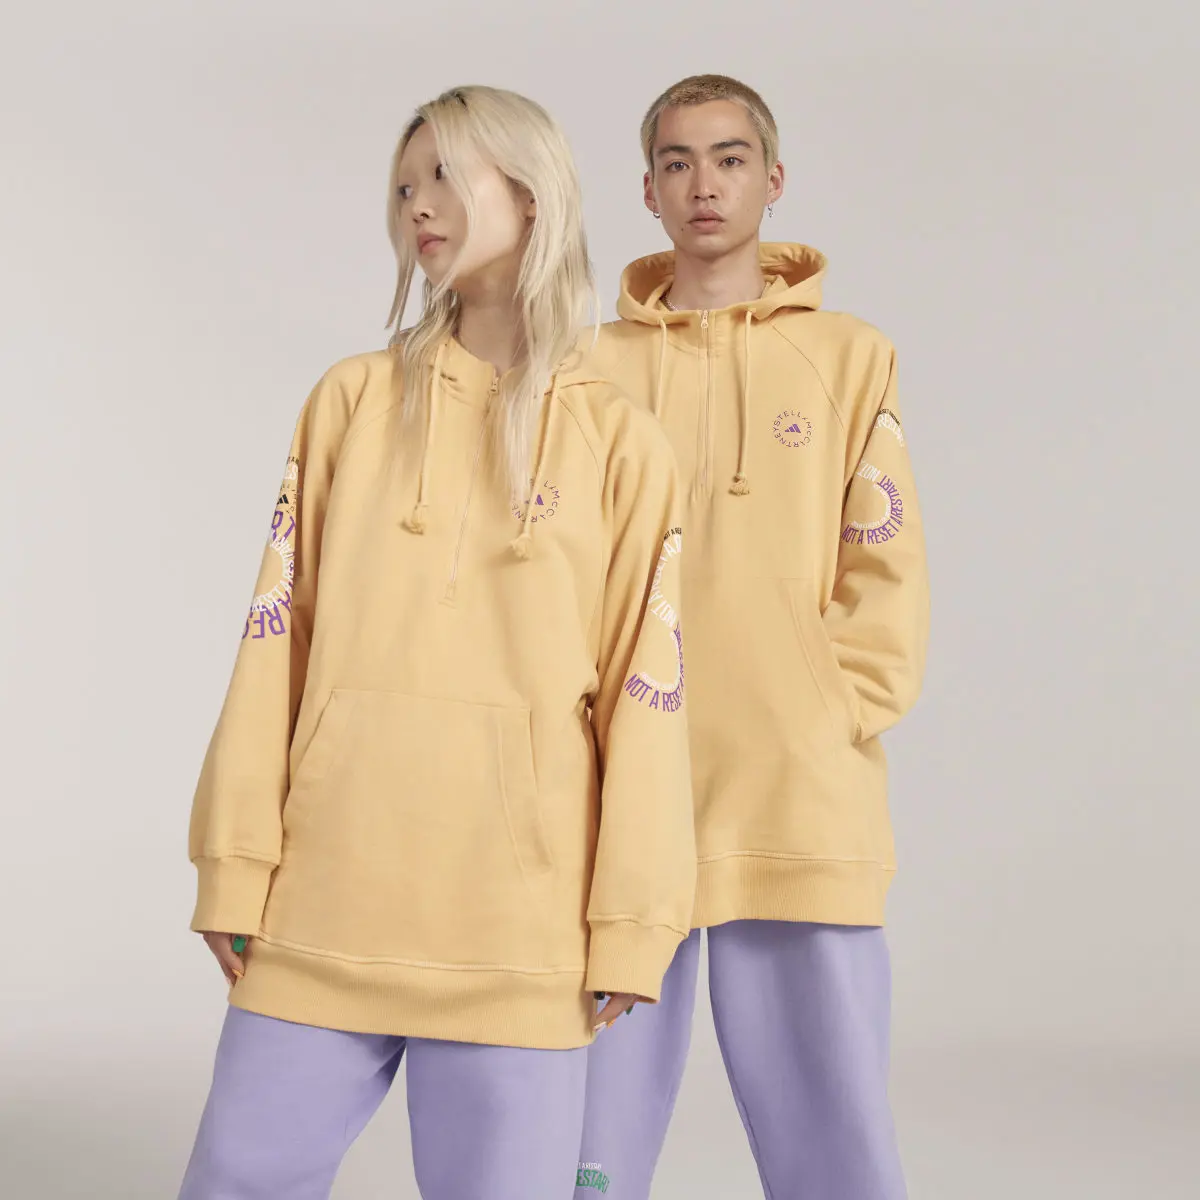 Adidas by Stella McCartney Pull On - Gender Neutral. 1